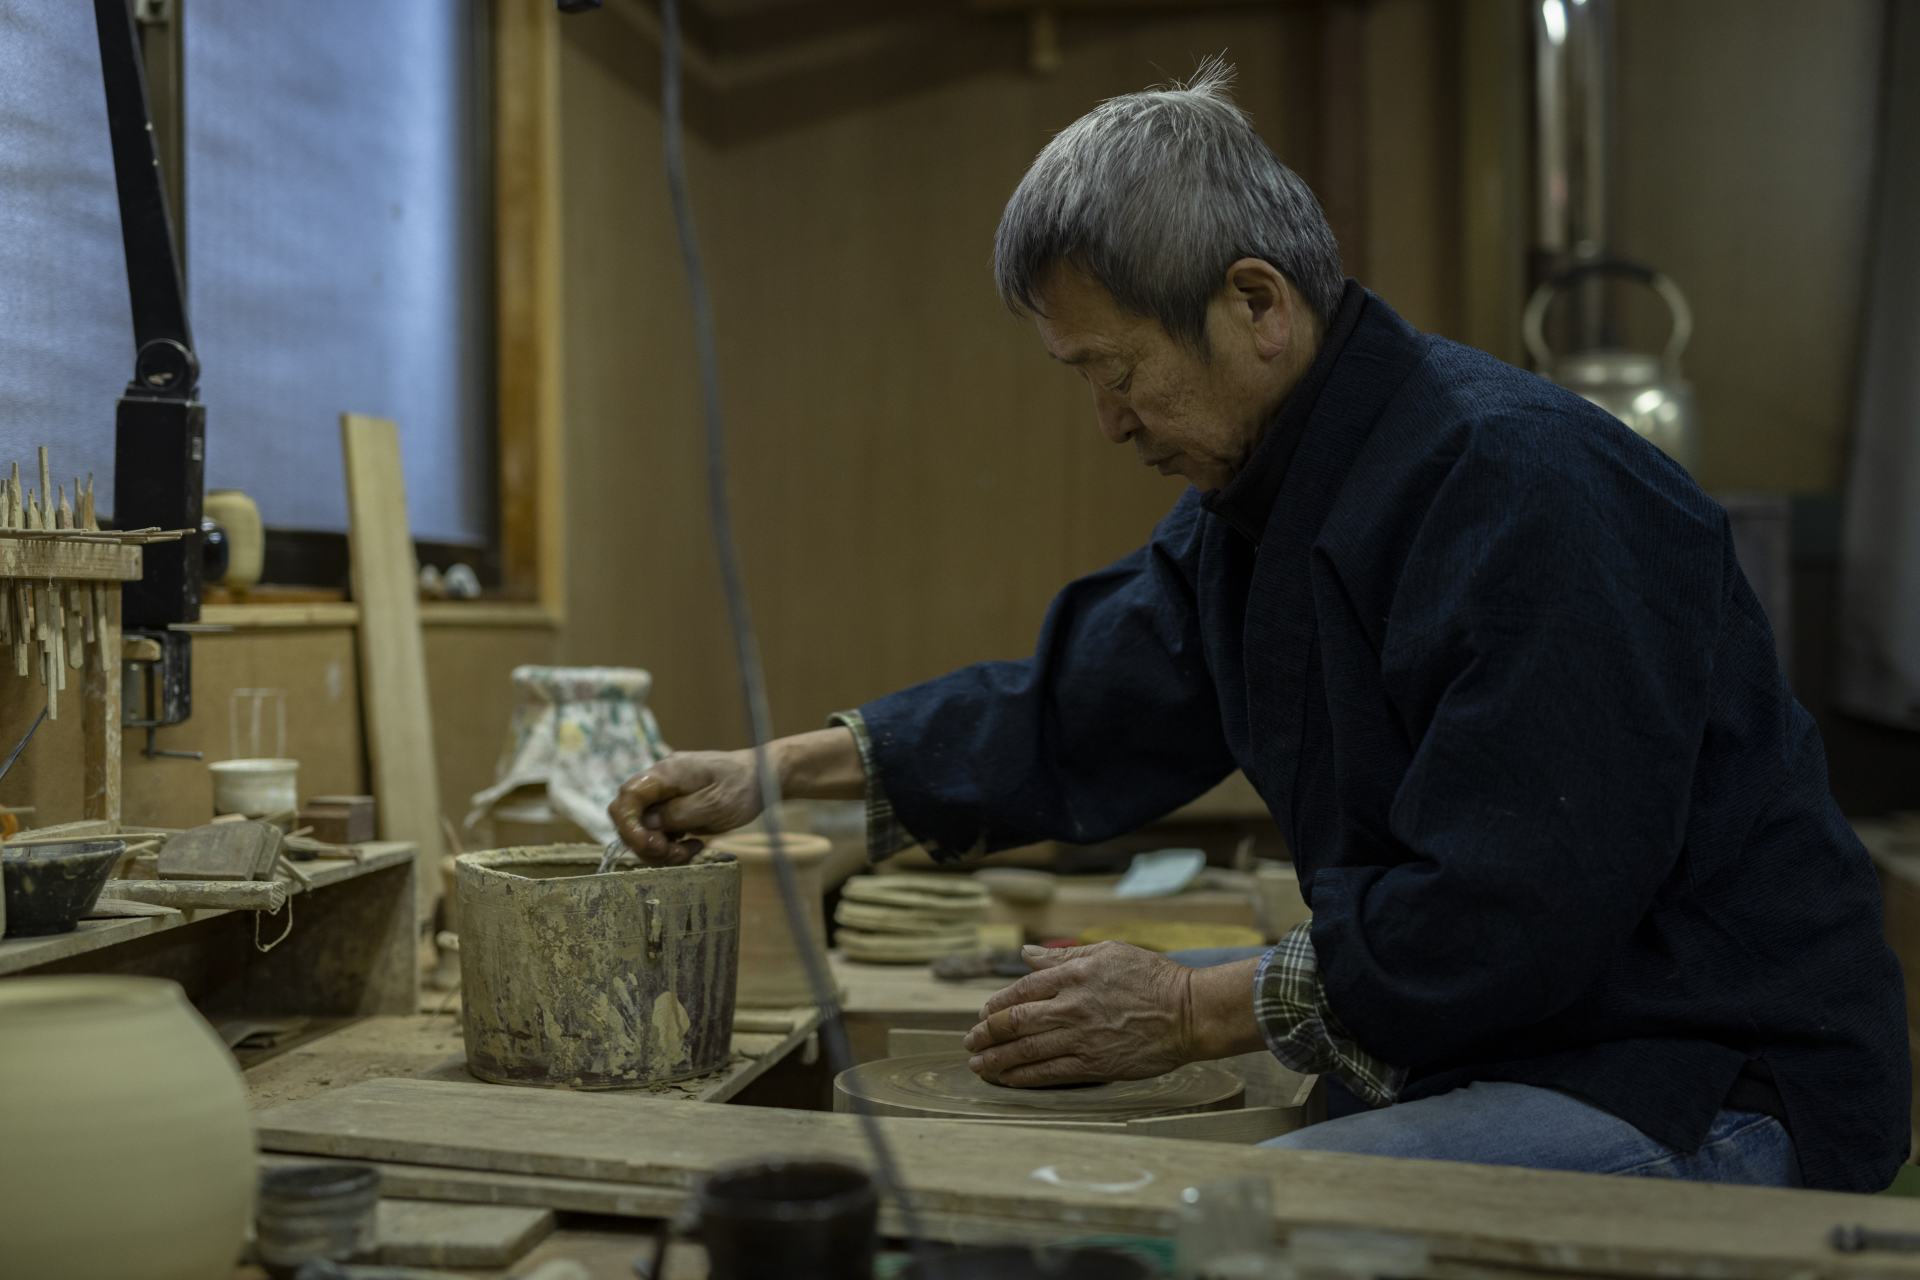 偉大な陶芸家の仕事。これらは伝統文化であると同時に、日本で受け継がれるべき宝物だ。  